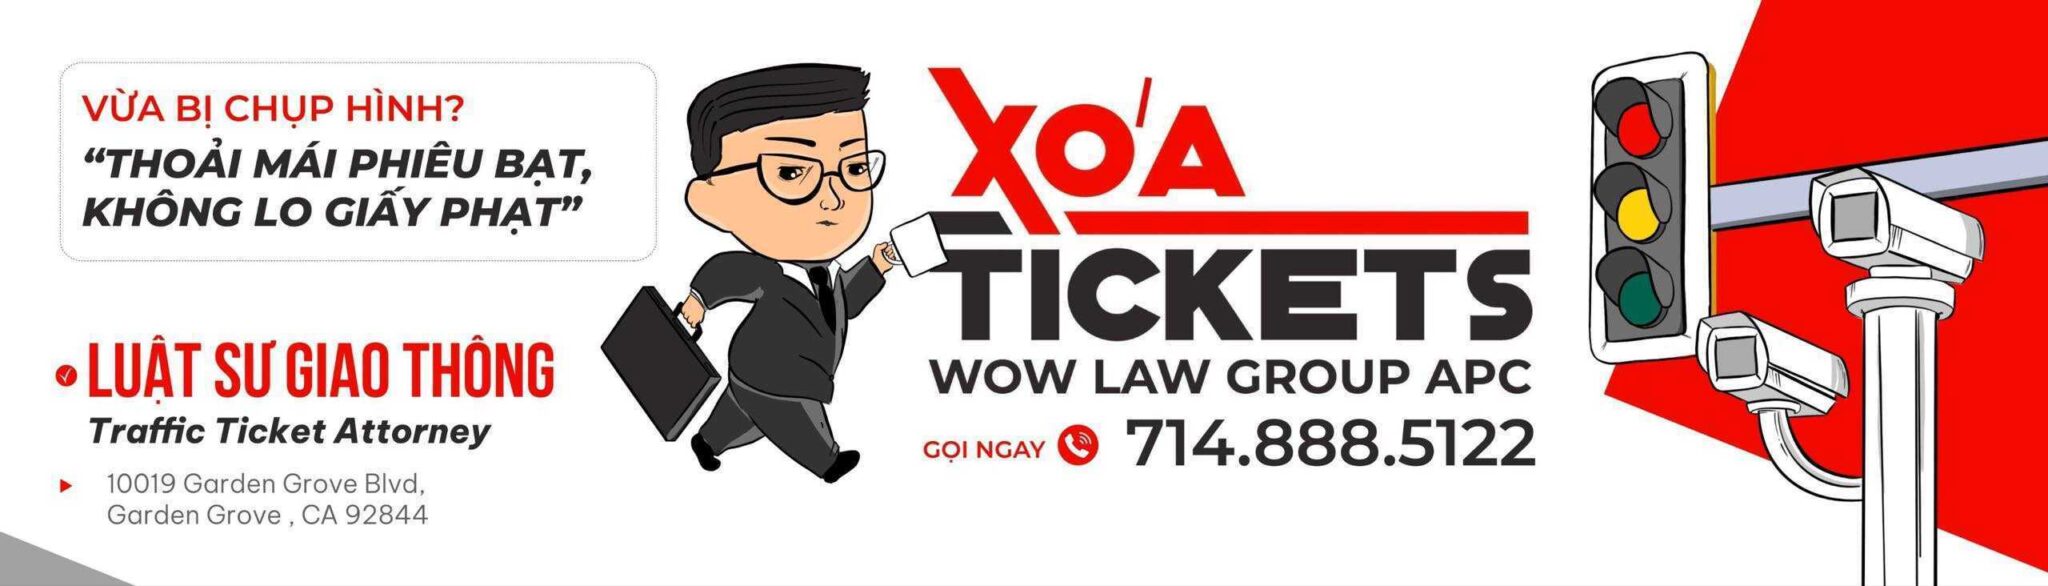 Xoá Tickets - Luật sư giao thông